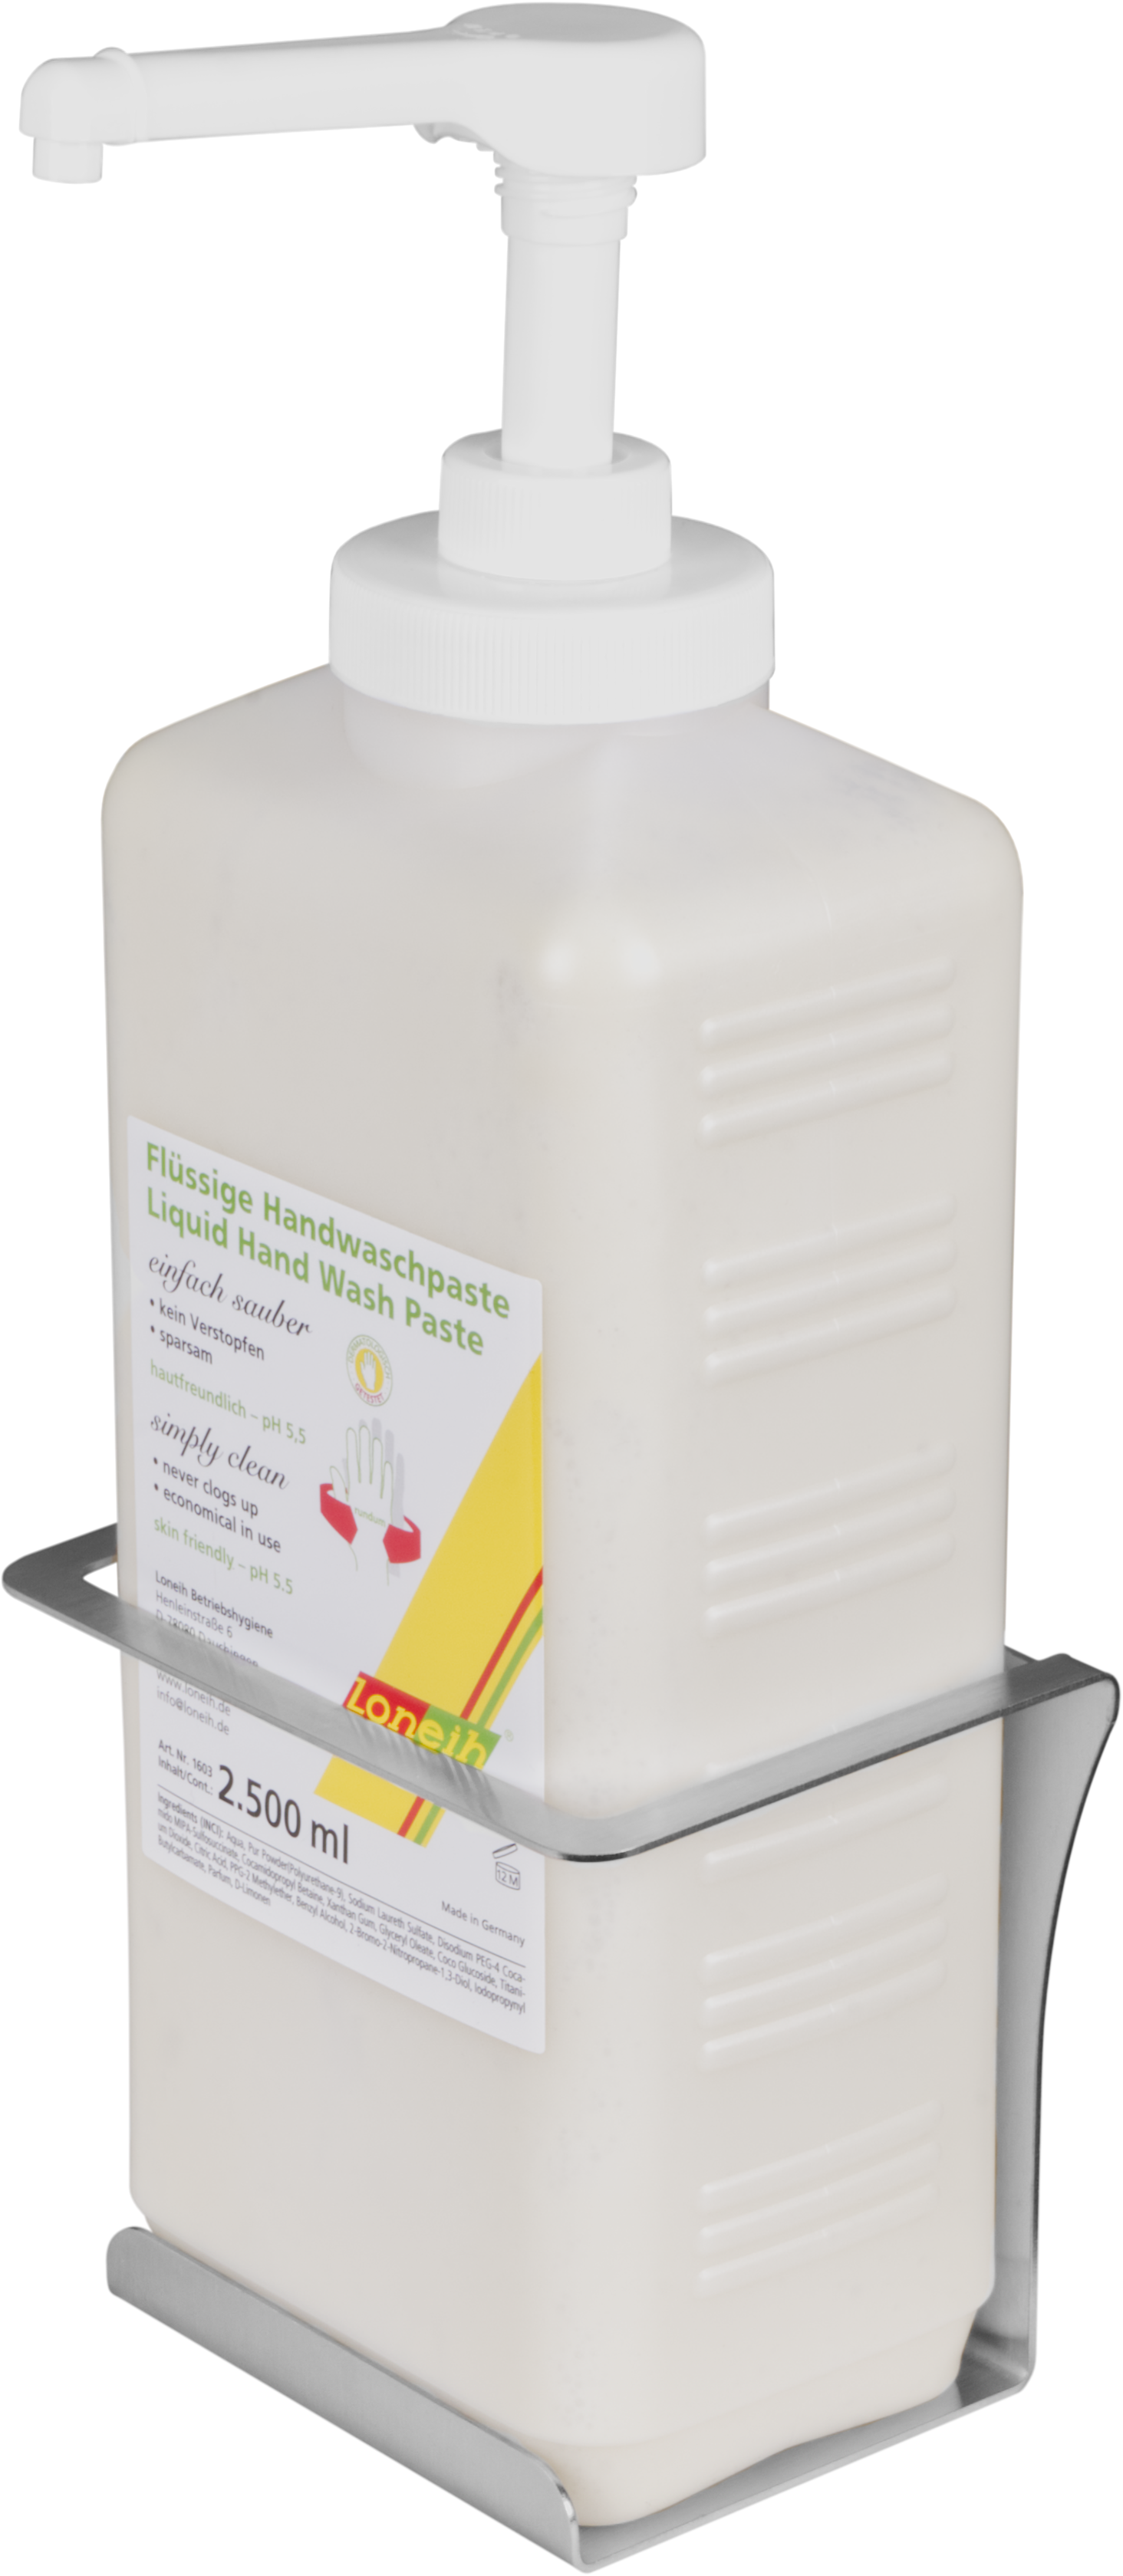 2 Liter Spezial-Handreiniger Handwaschpaste + Spender/Wandhalter  HC02LCYJ+HCD02CH, 02333 - Pro-Lift-Montagetechnik